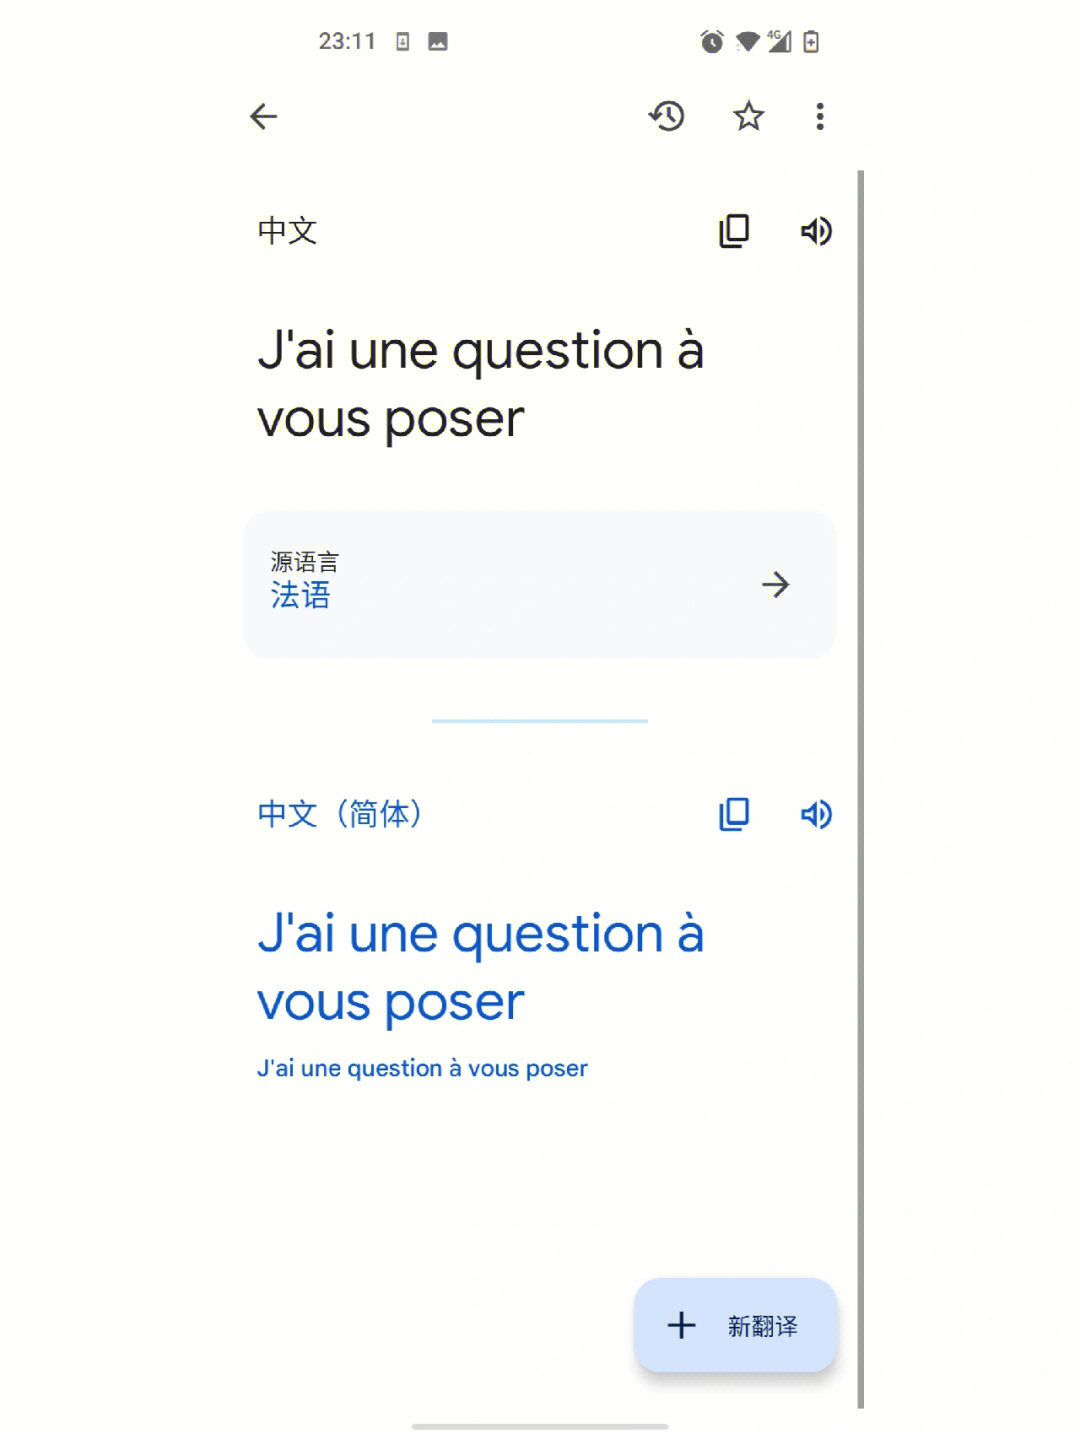 发现一个小秘密 在谷歌翻译把中文设成源语言读法语句子 你就能听到不